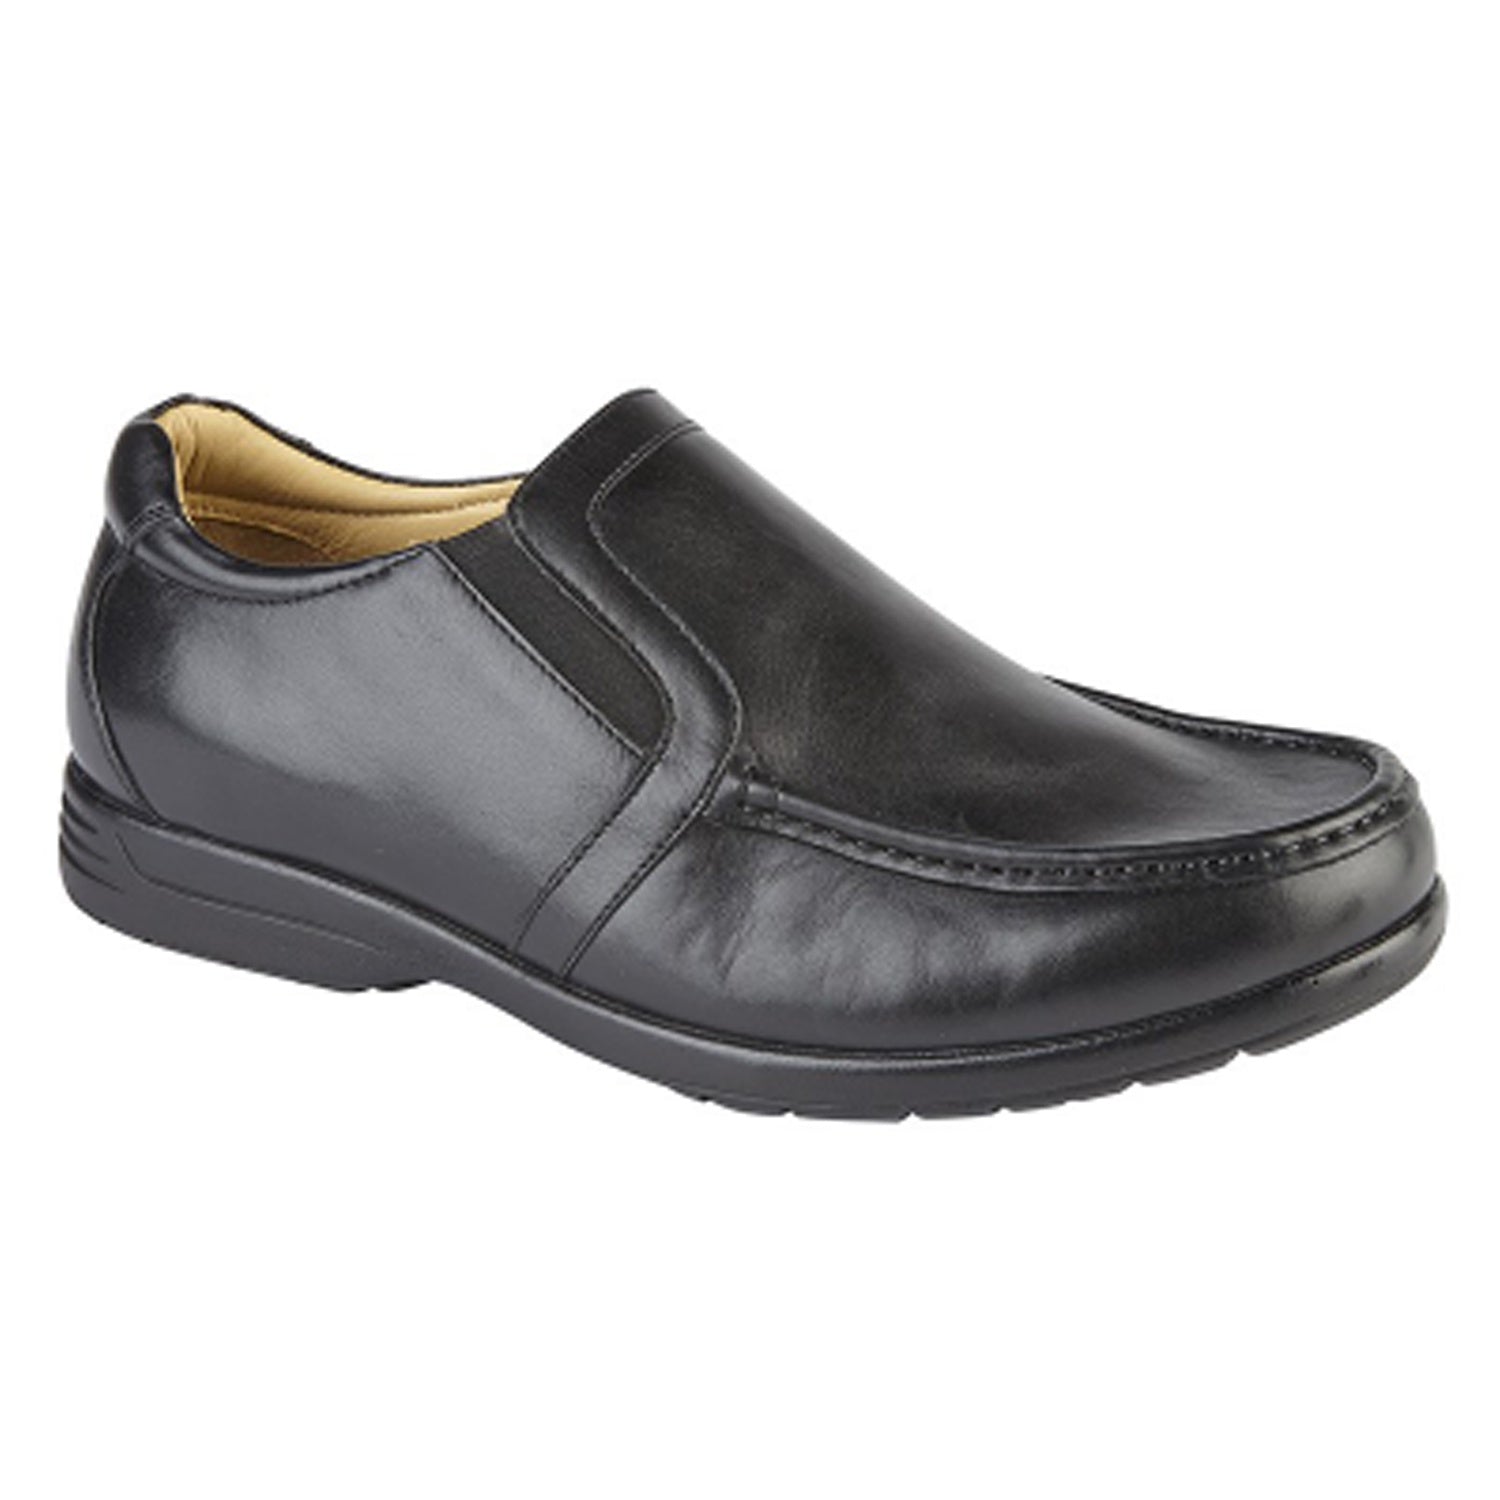 Roamers Shoes - M984 - Black 1